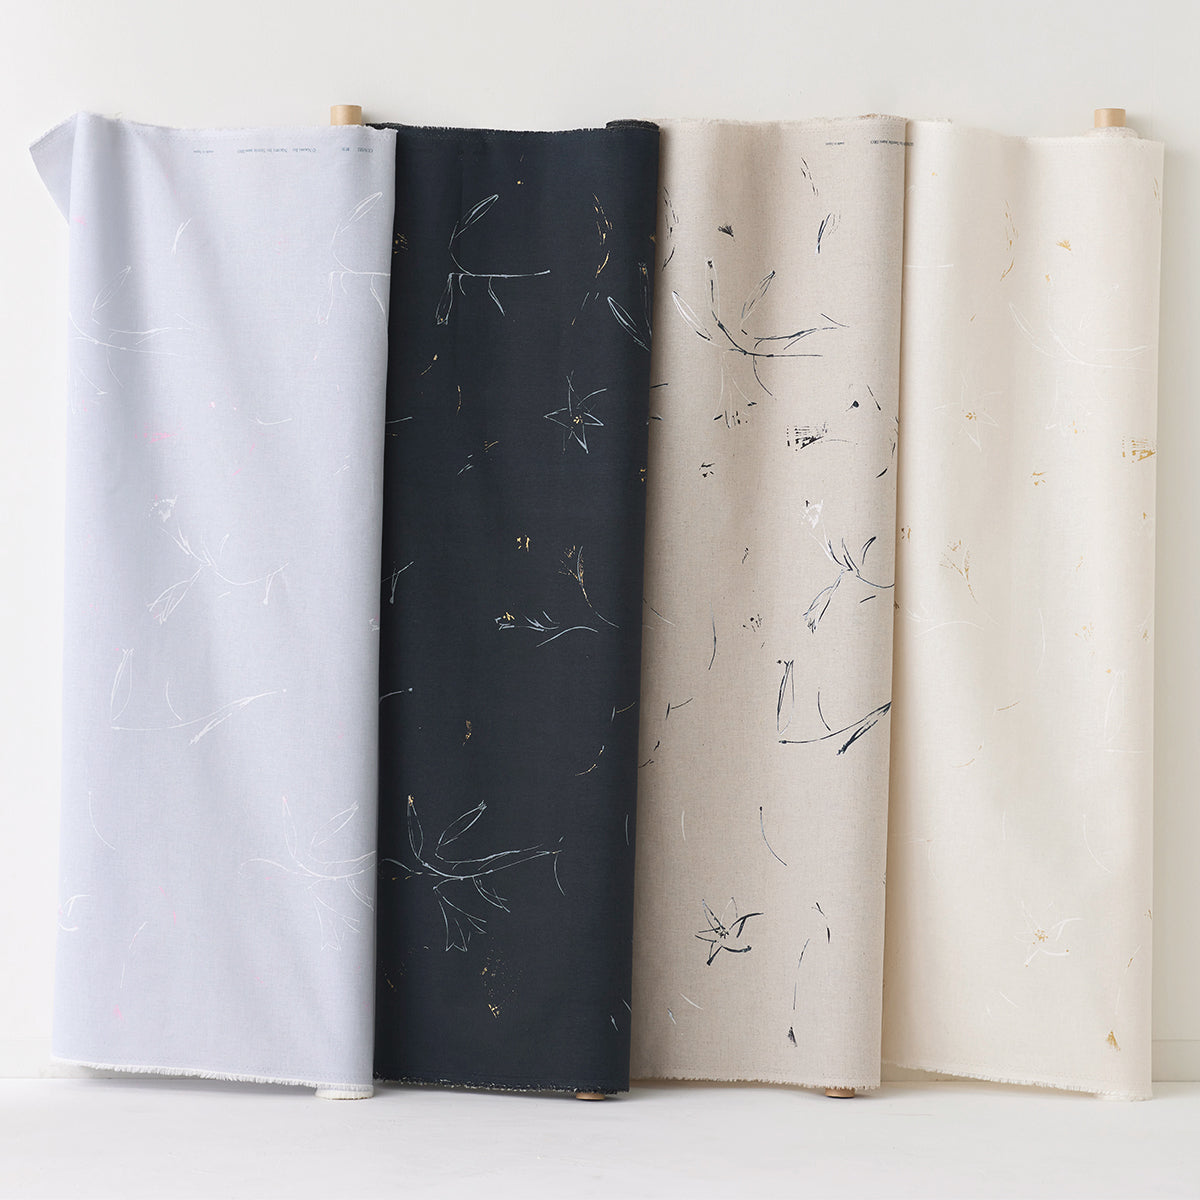 nani IRO Gunsei Organic Cotton Linen Sheeting EGX-11381-1